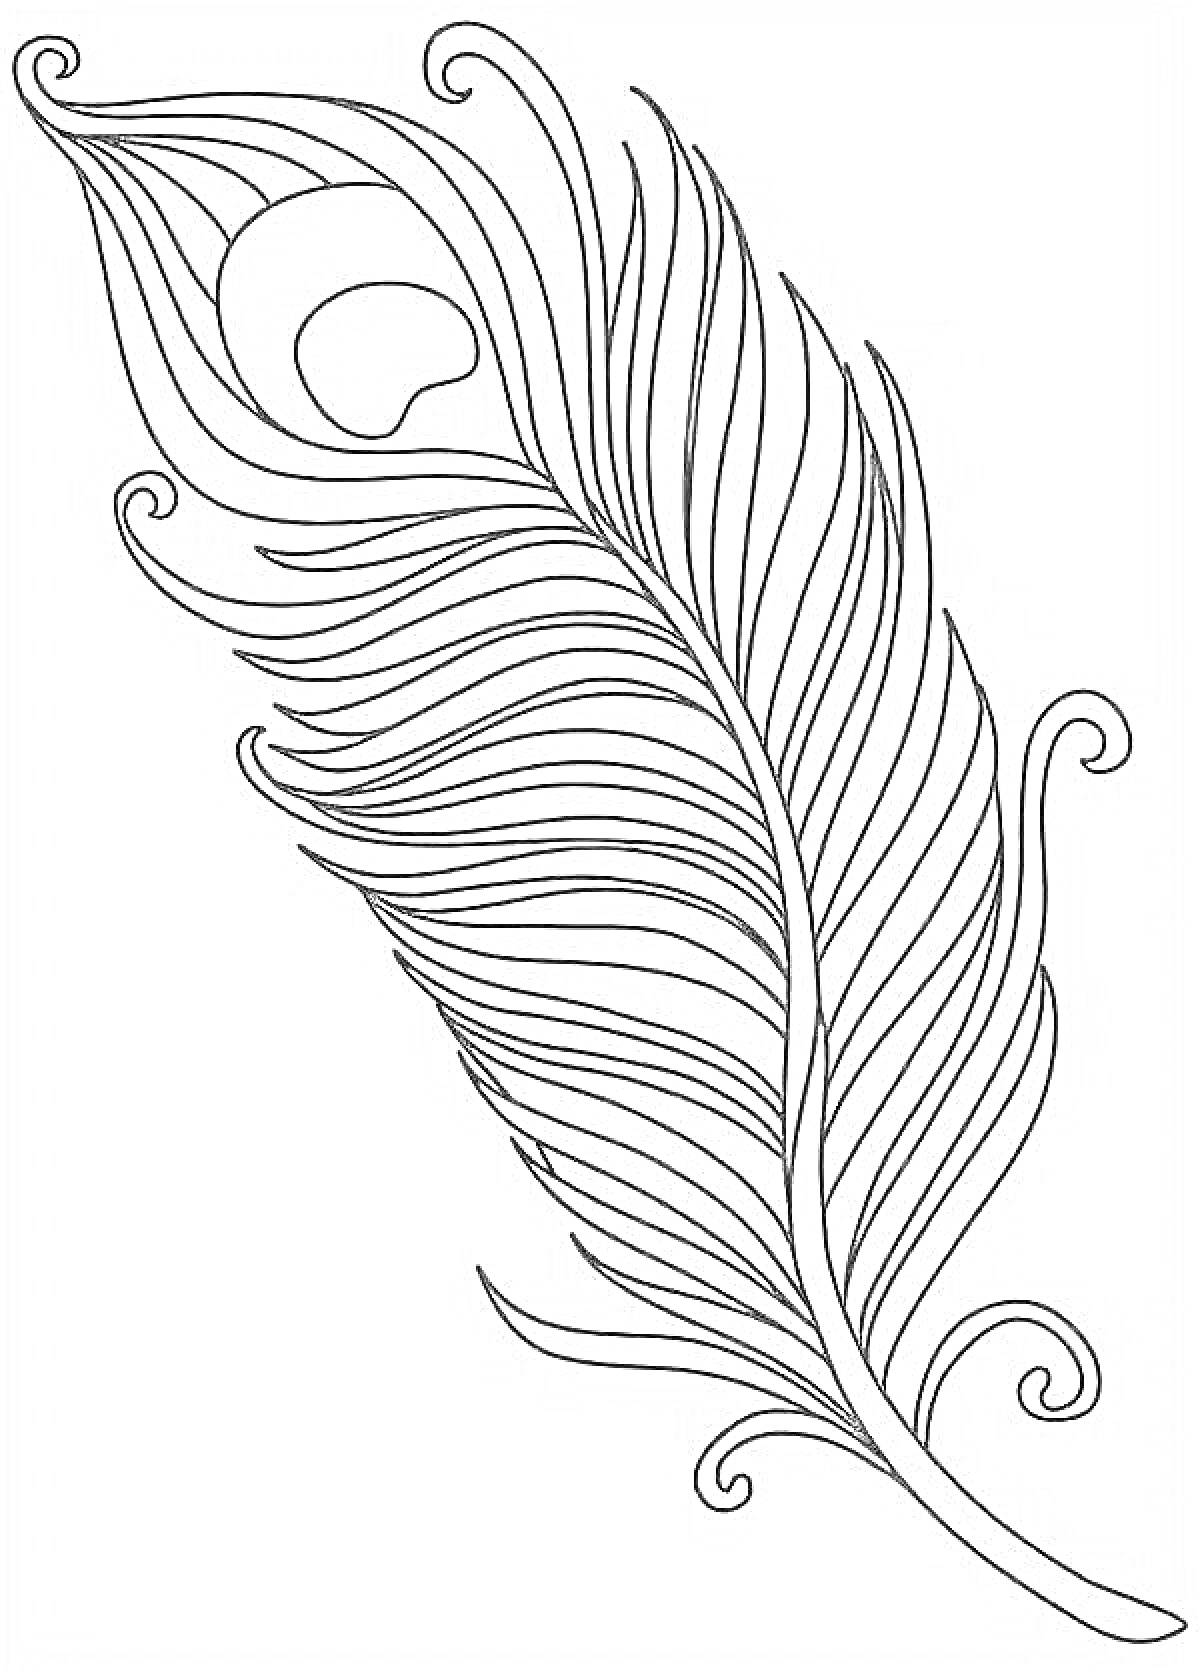 Раскраска Чёрно-белое изображение пера жар птицы с узорными линиями